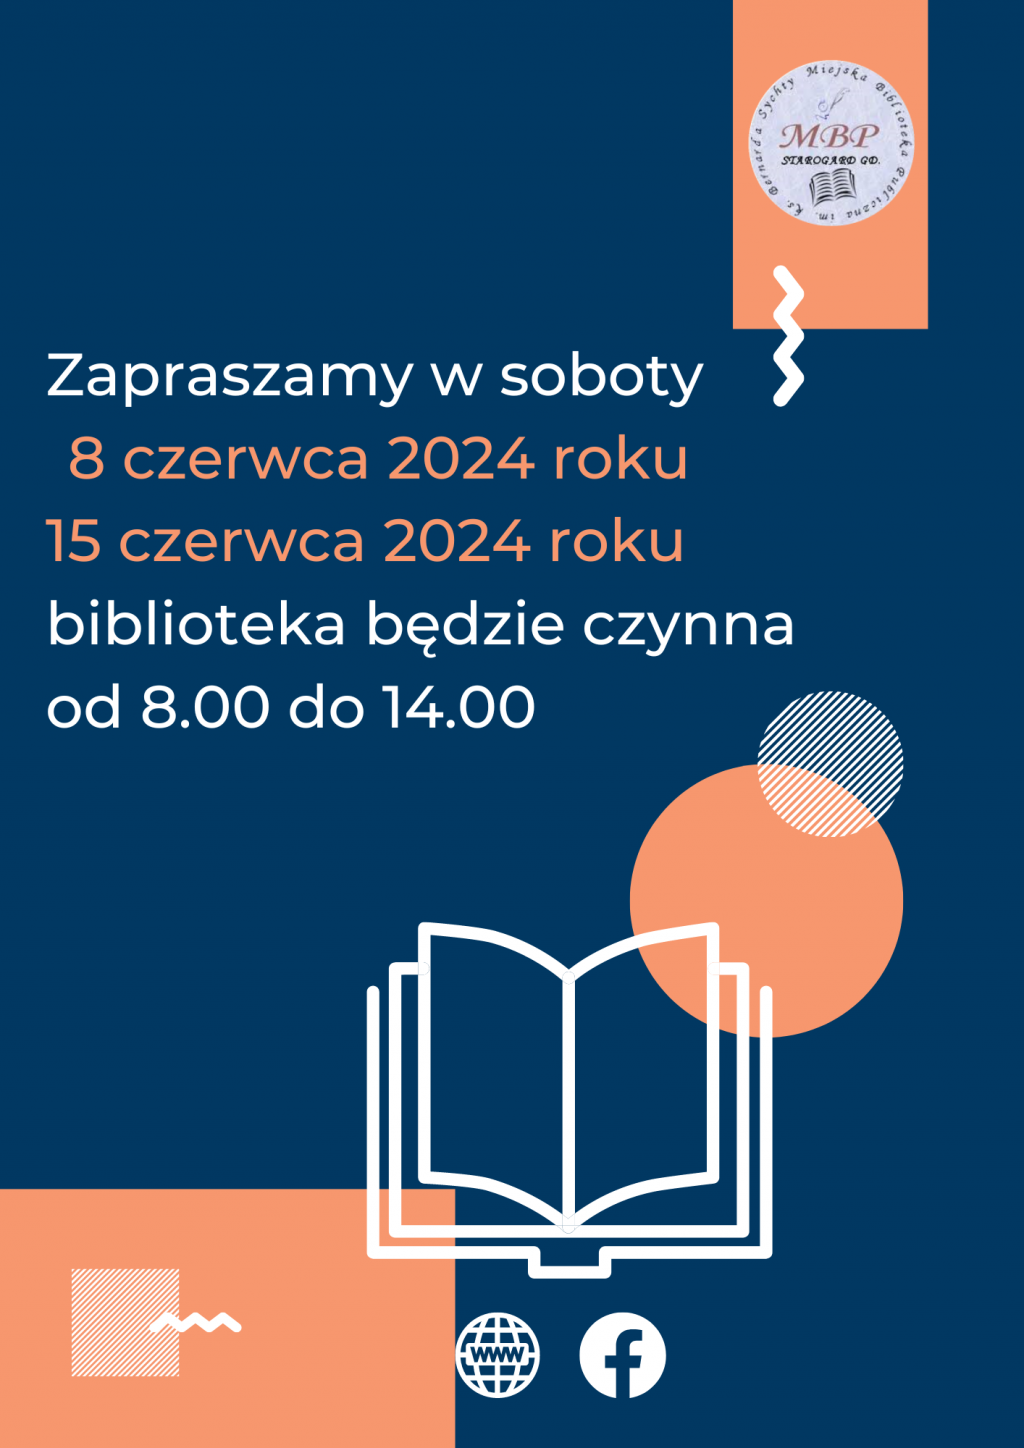 Plakat informujący o pracujących sobotach: 8 czerwca i 15 czerwca 2024, biblioteka będzie czynna od 8.00 do 14.00. Miejska Biblioteka Publiczna w Starogardzie Gdańskim.